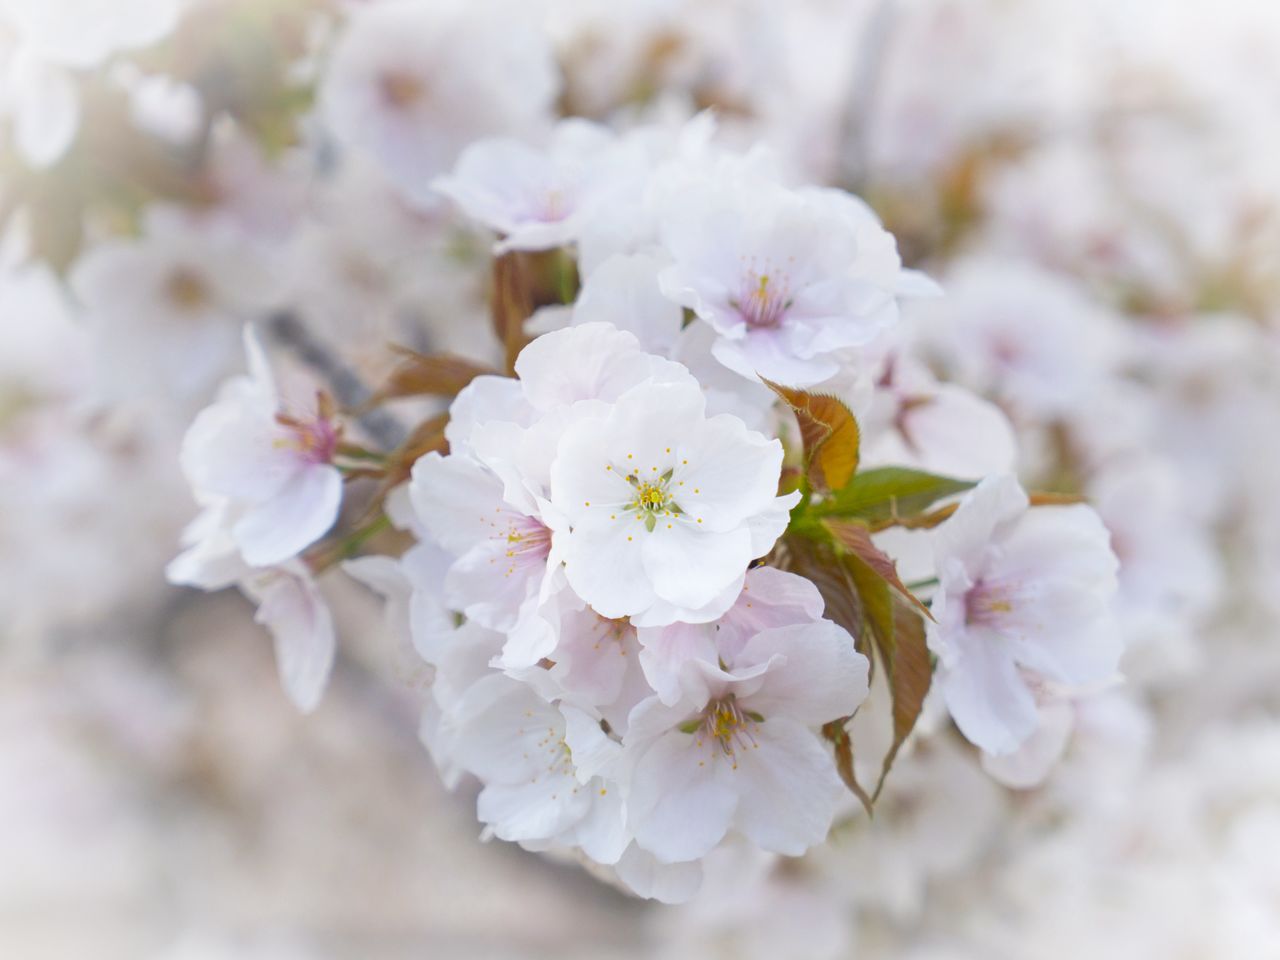 Цветы сакуры омуро собраны в крупную гроздь